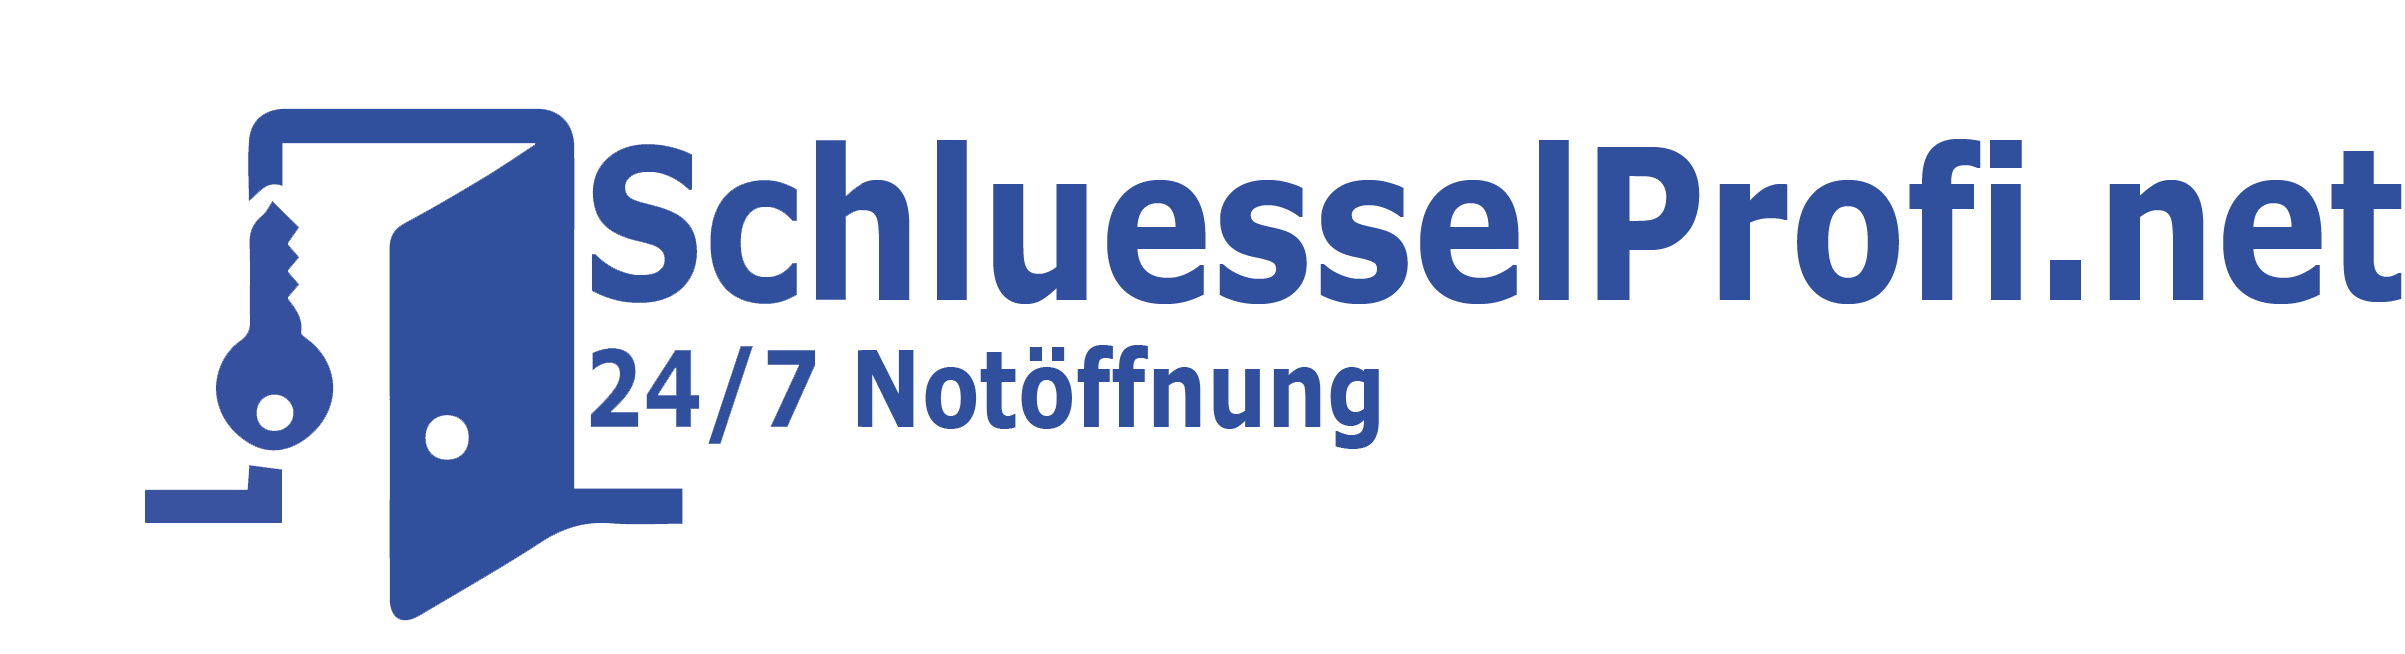 Logo SchluesselProfi.net